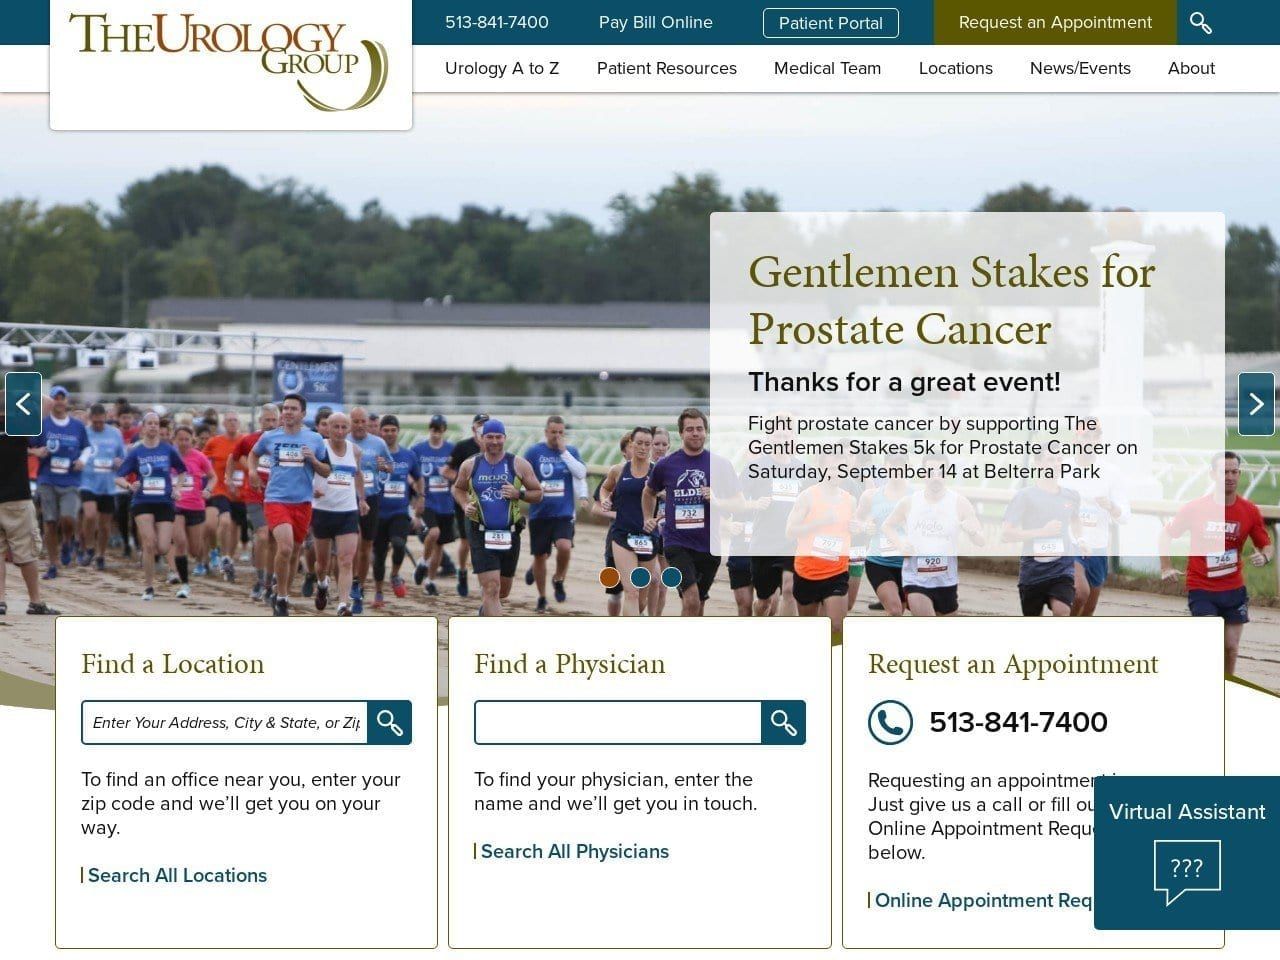 Urology Group Website Screenshot from theurologygroup.net